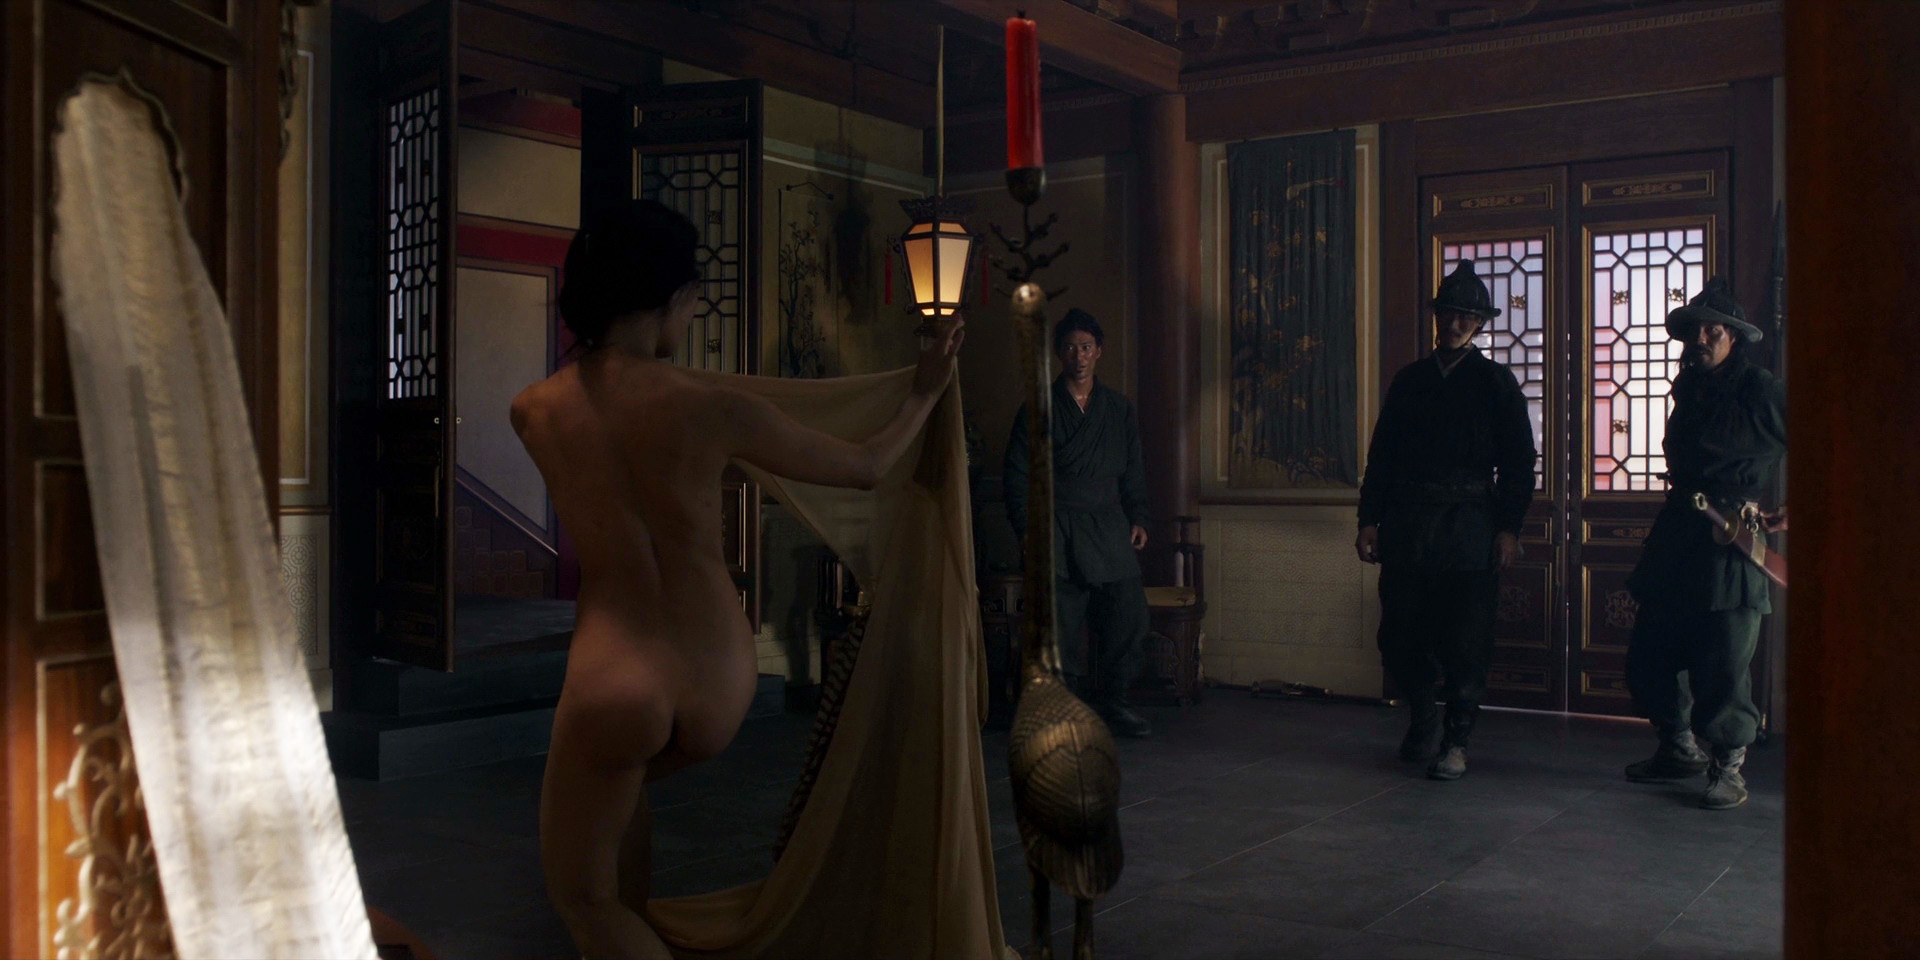 Marco Polo Nude Scenes. 